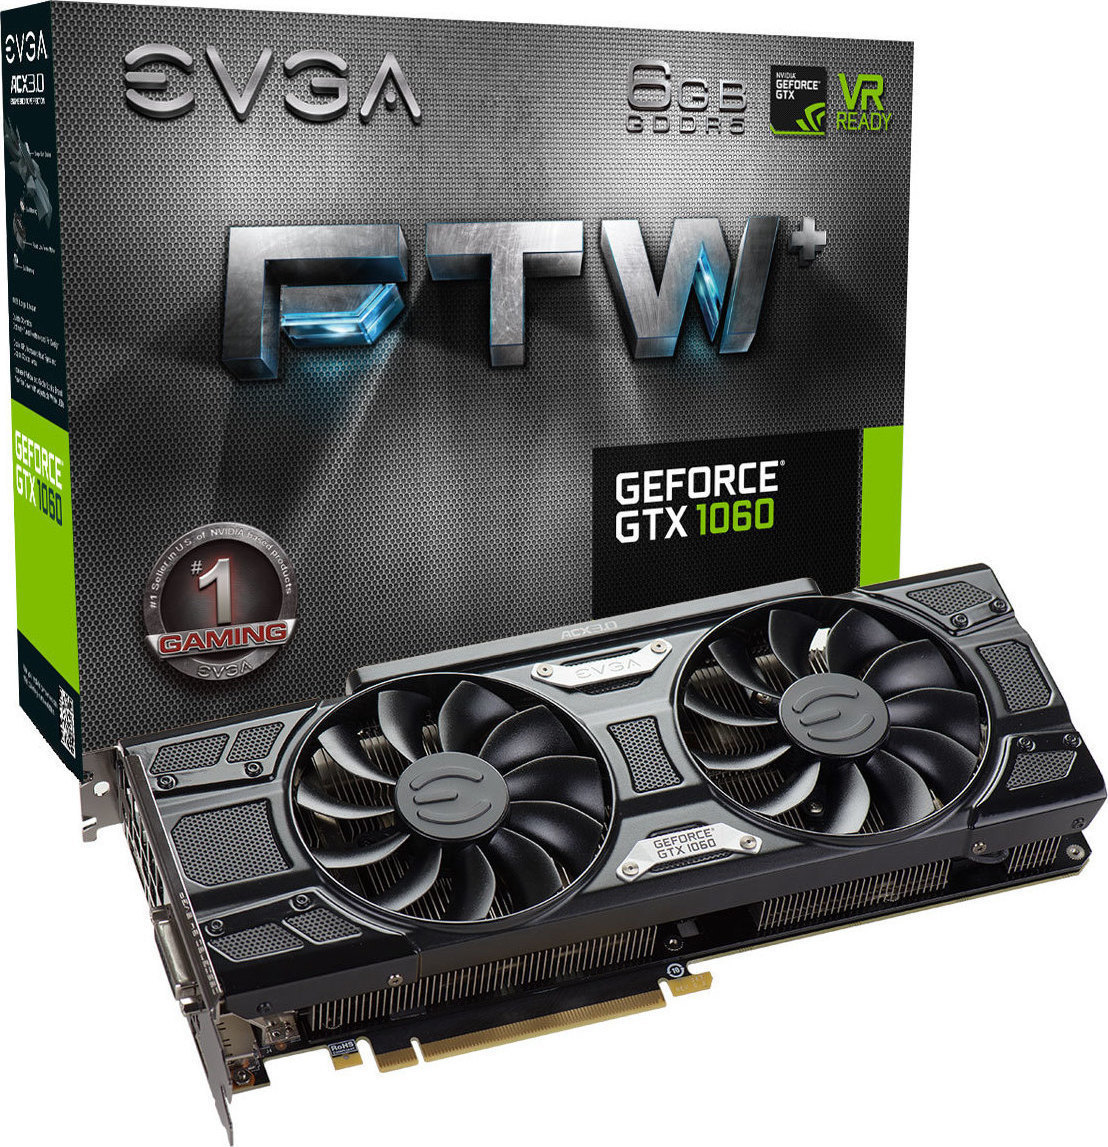 EVGA GeForce GTX1060 6GB FTW+ Gaming ACX 3.0 (06G-P4-6368-KR) | Skroutz.gr